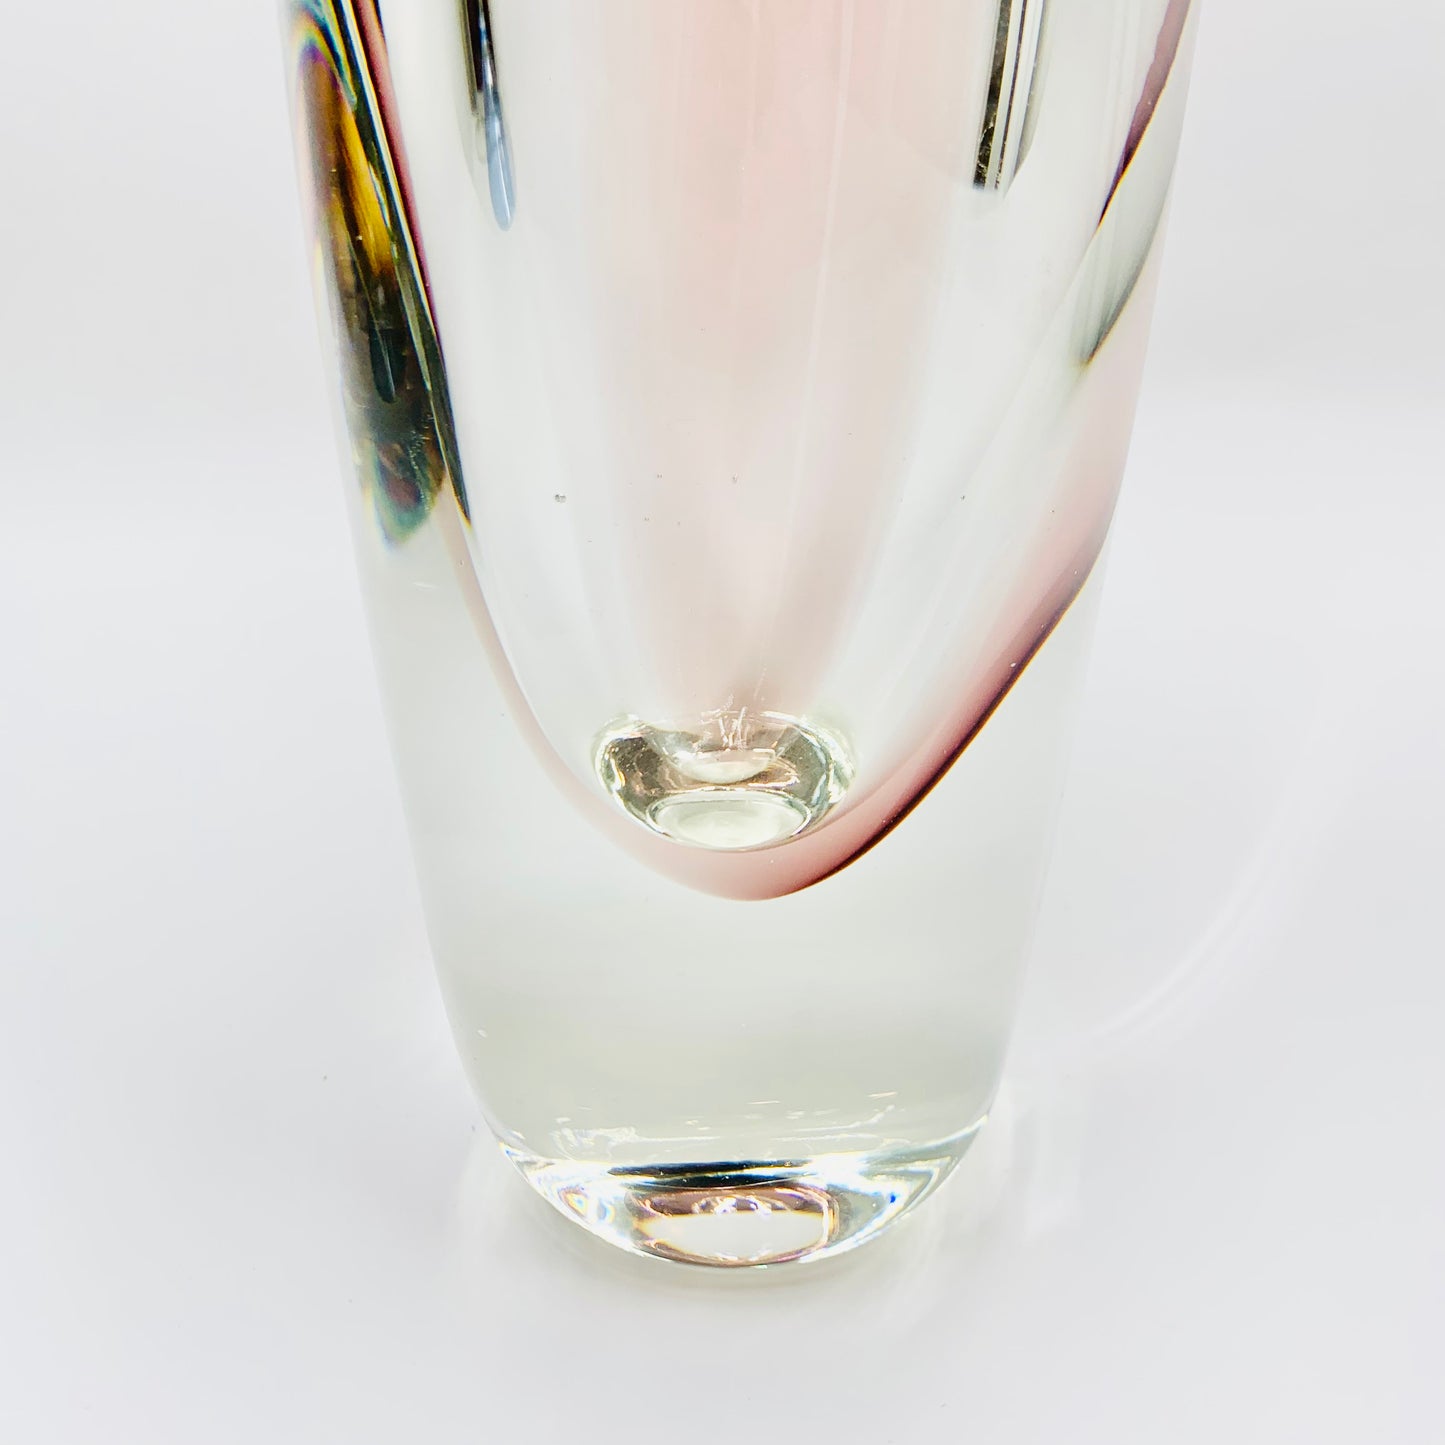 Extremely rare early MCM example of Swedish Saraband glass vase